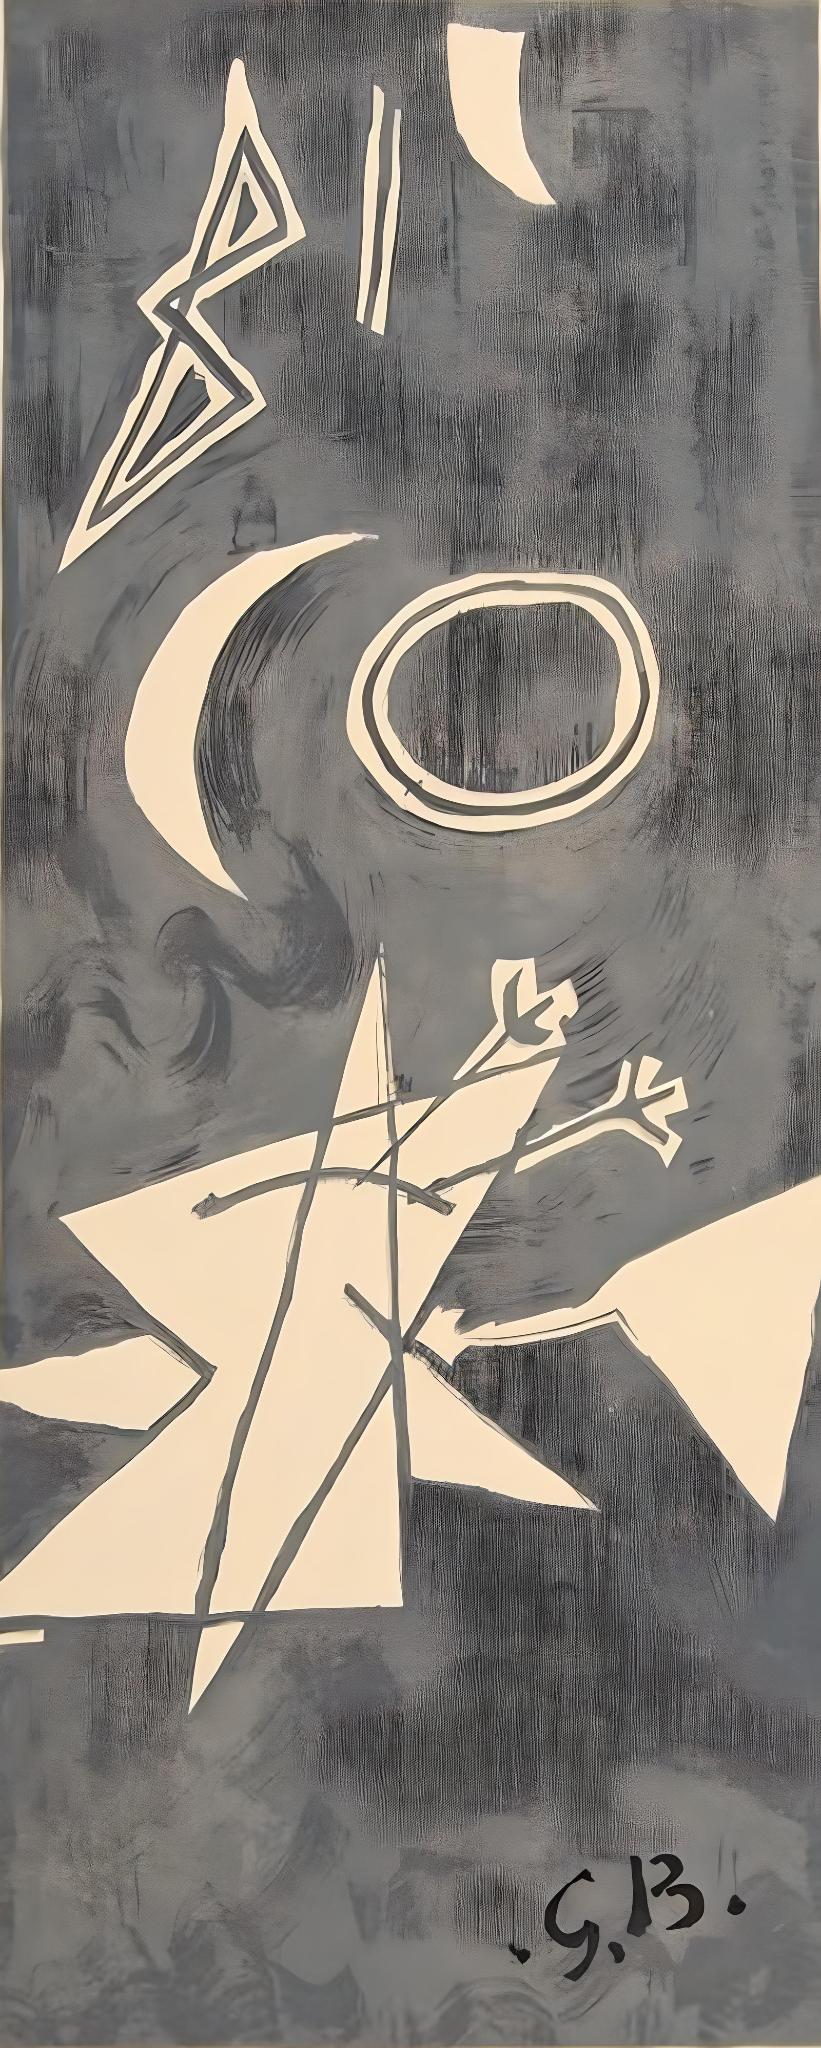 Georges Braque Still-Life Print - Braque, Ciel gris II, Derrière le miroir (after)